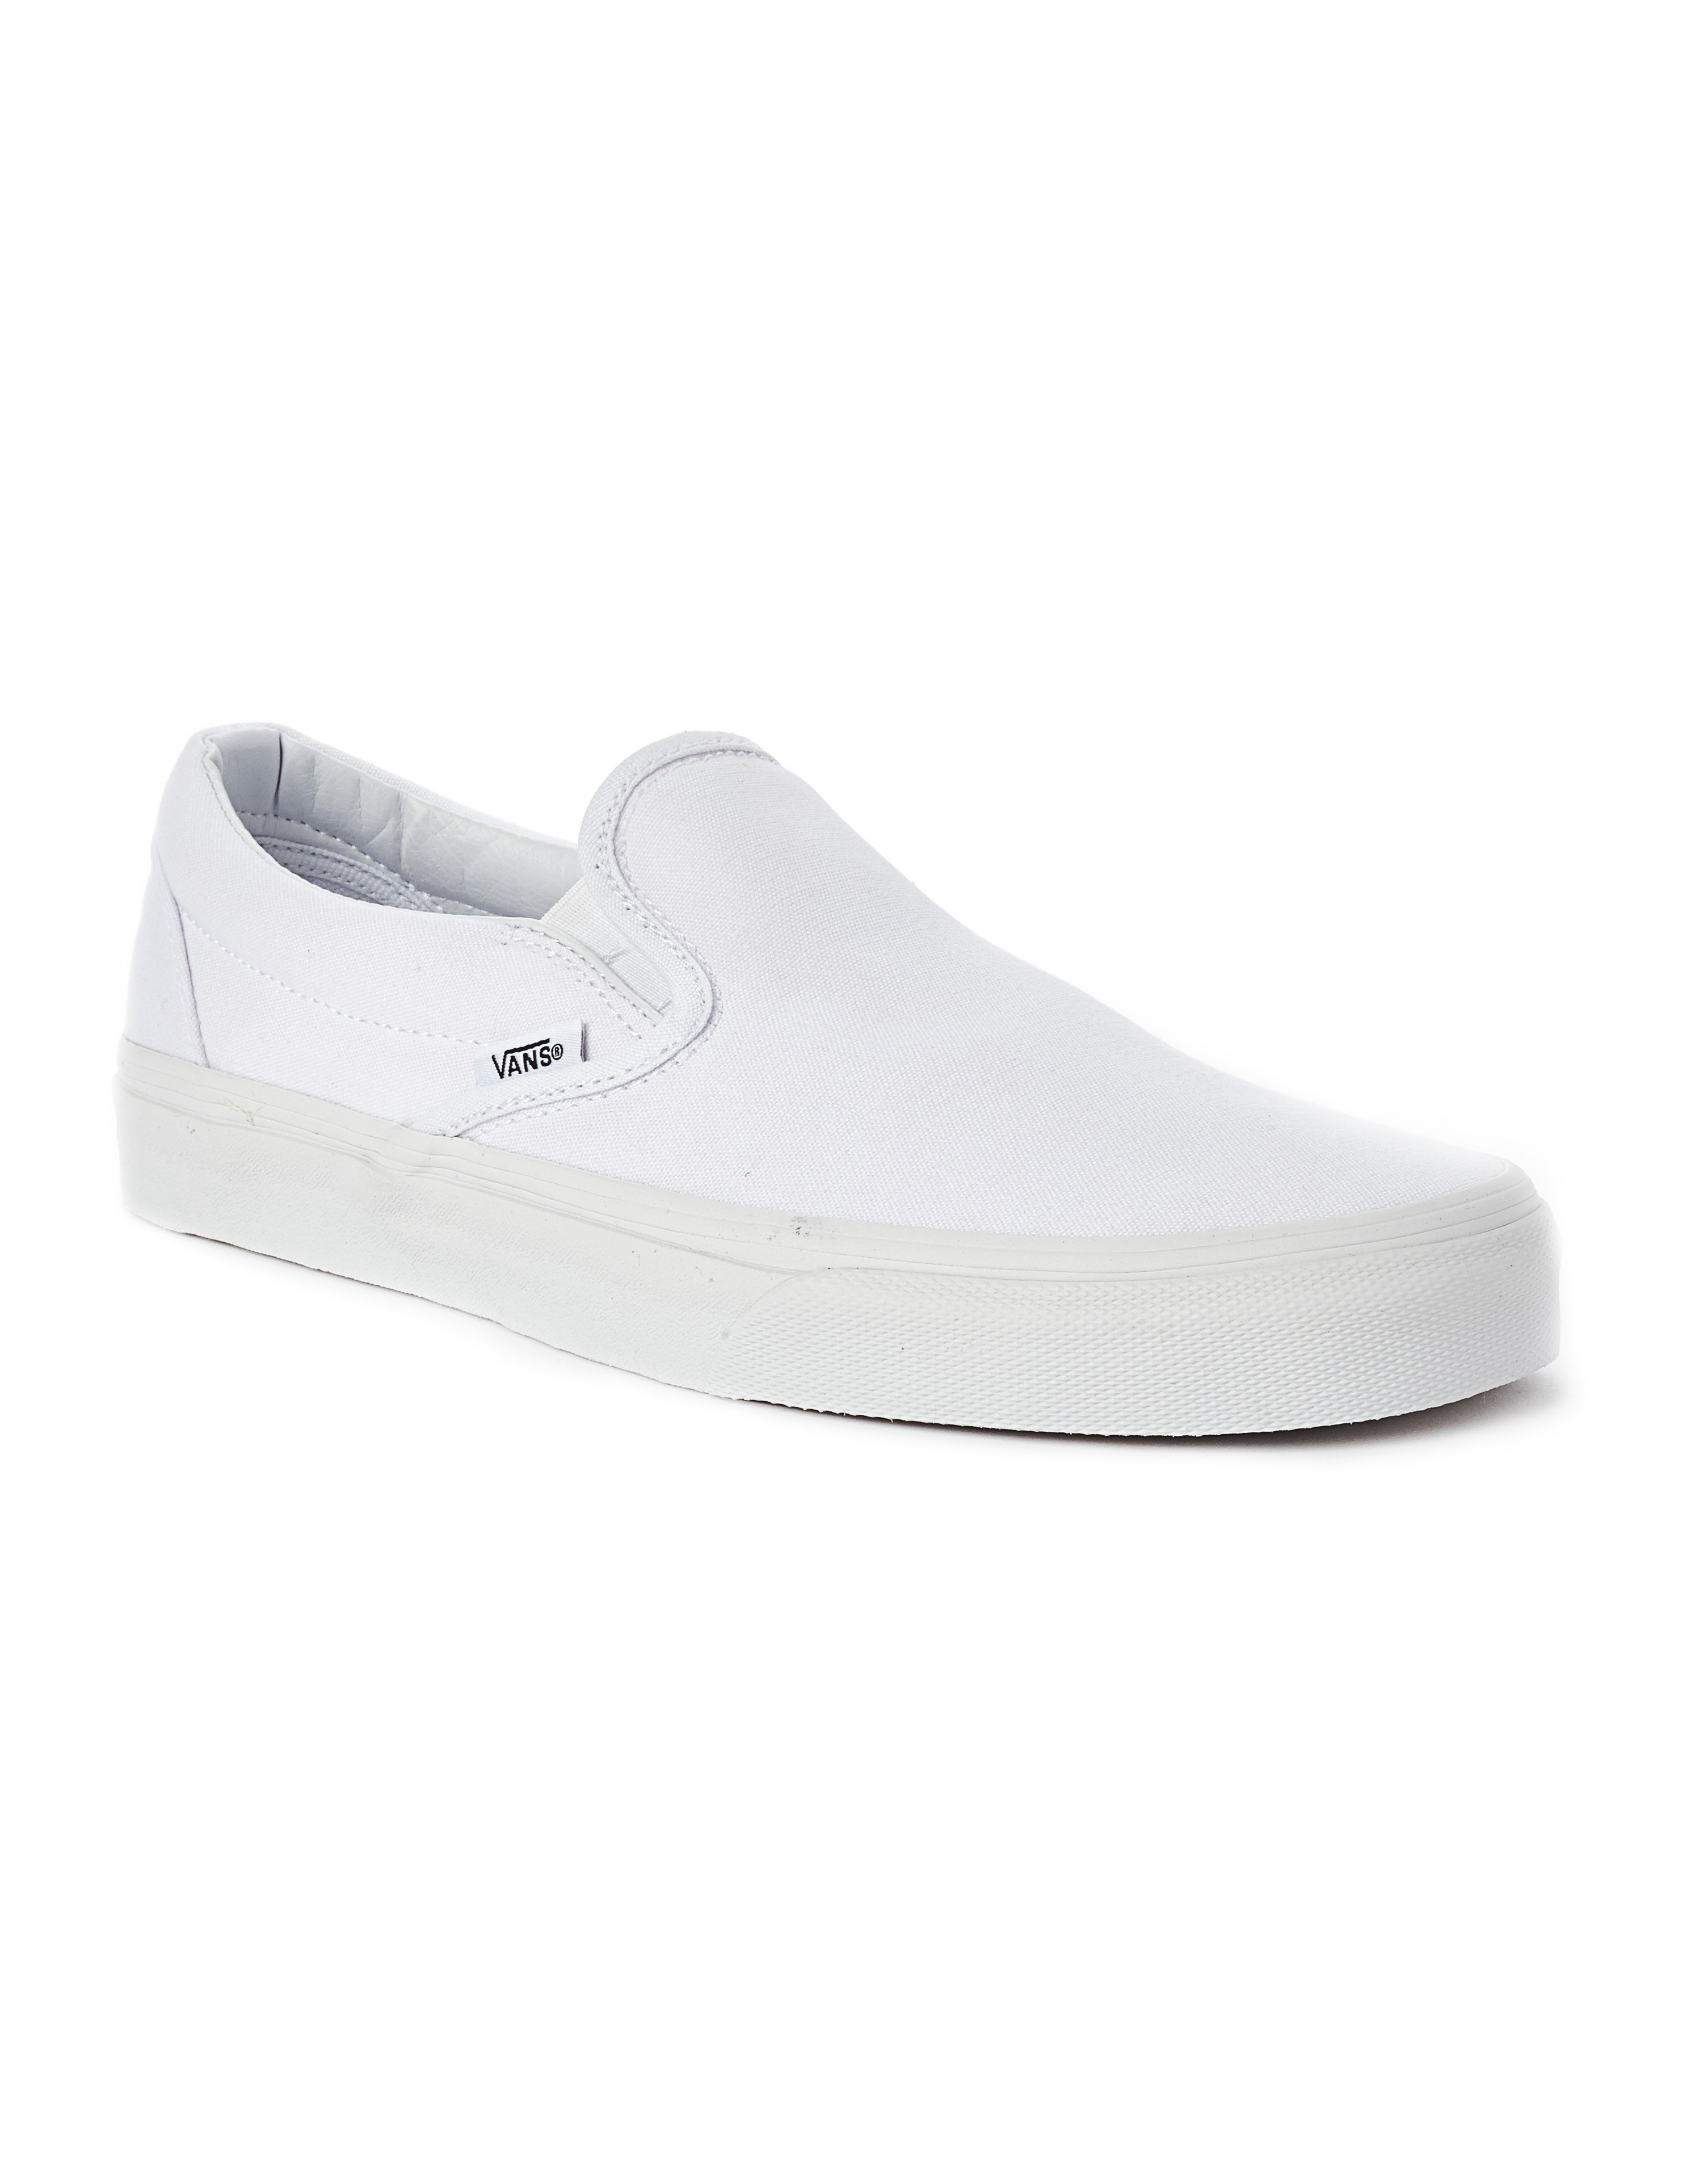 Lyst - Vans Classic Slip-on Round Toe Canvas Skate Shoe in White for Men